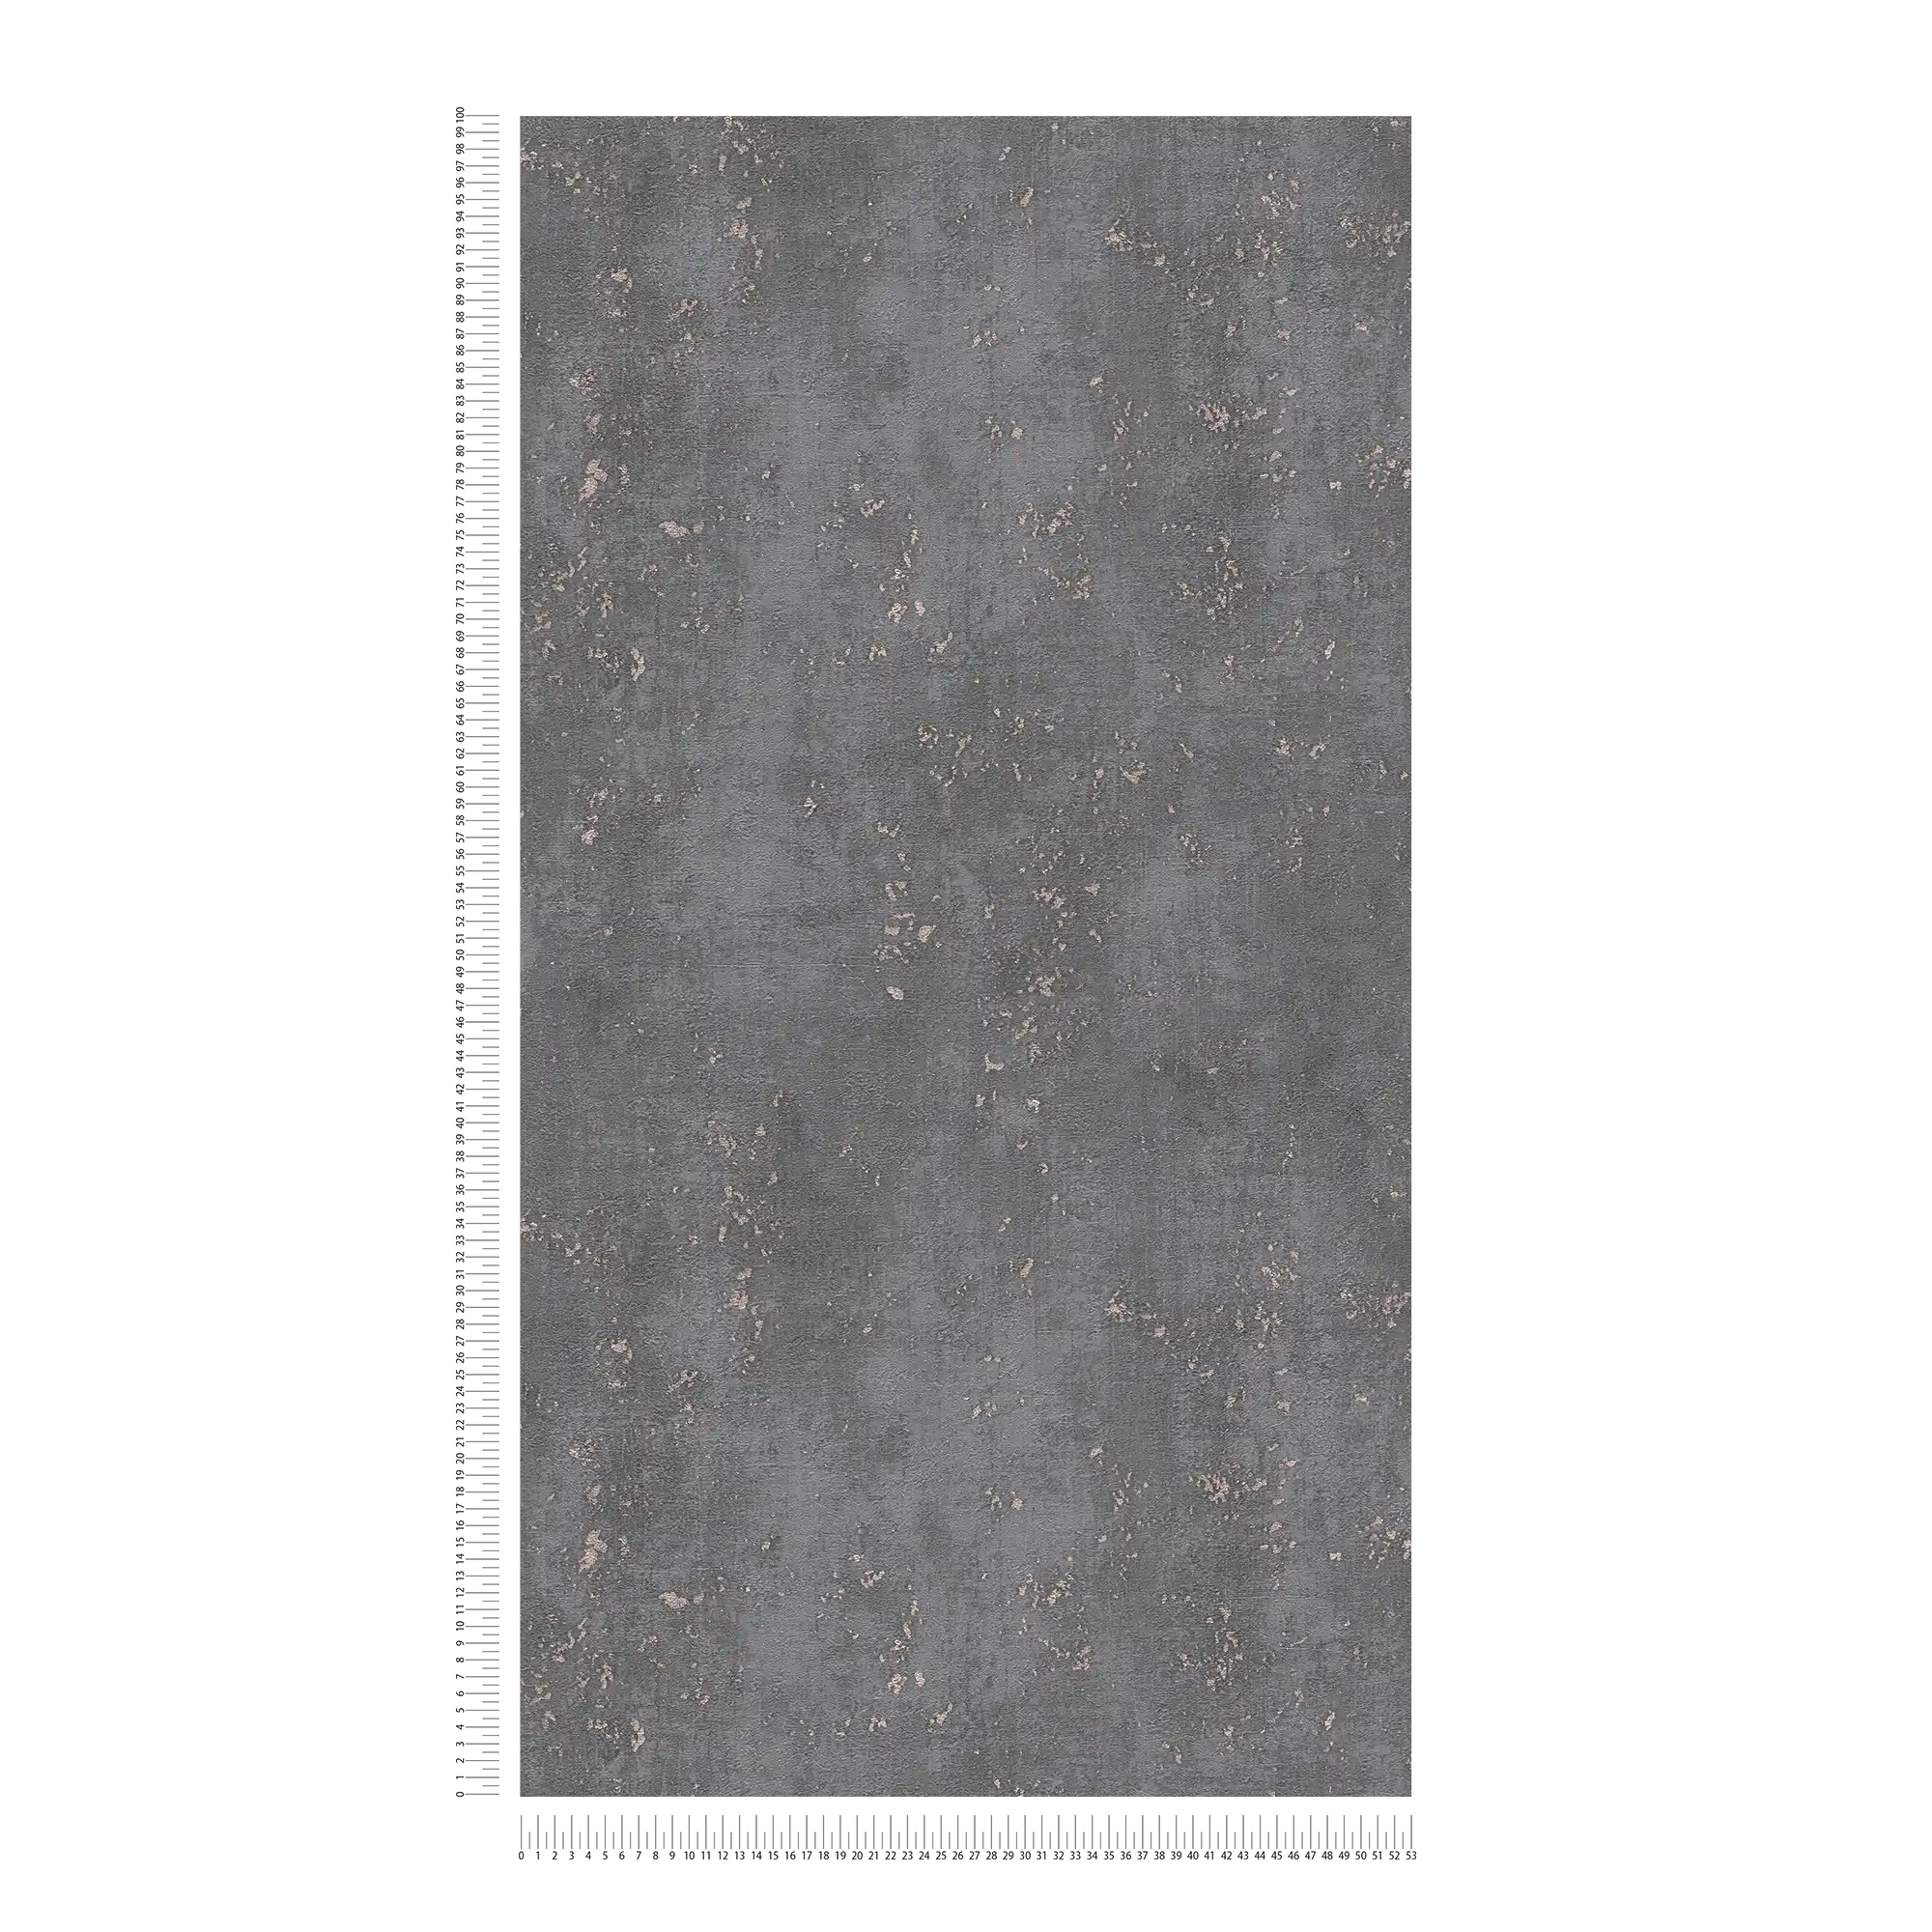             Grey brown wallpaper plaster look & metallic accent - brown
        